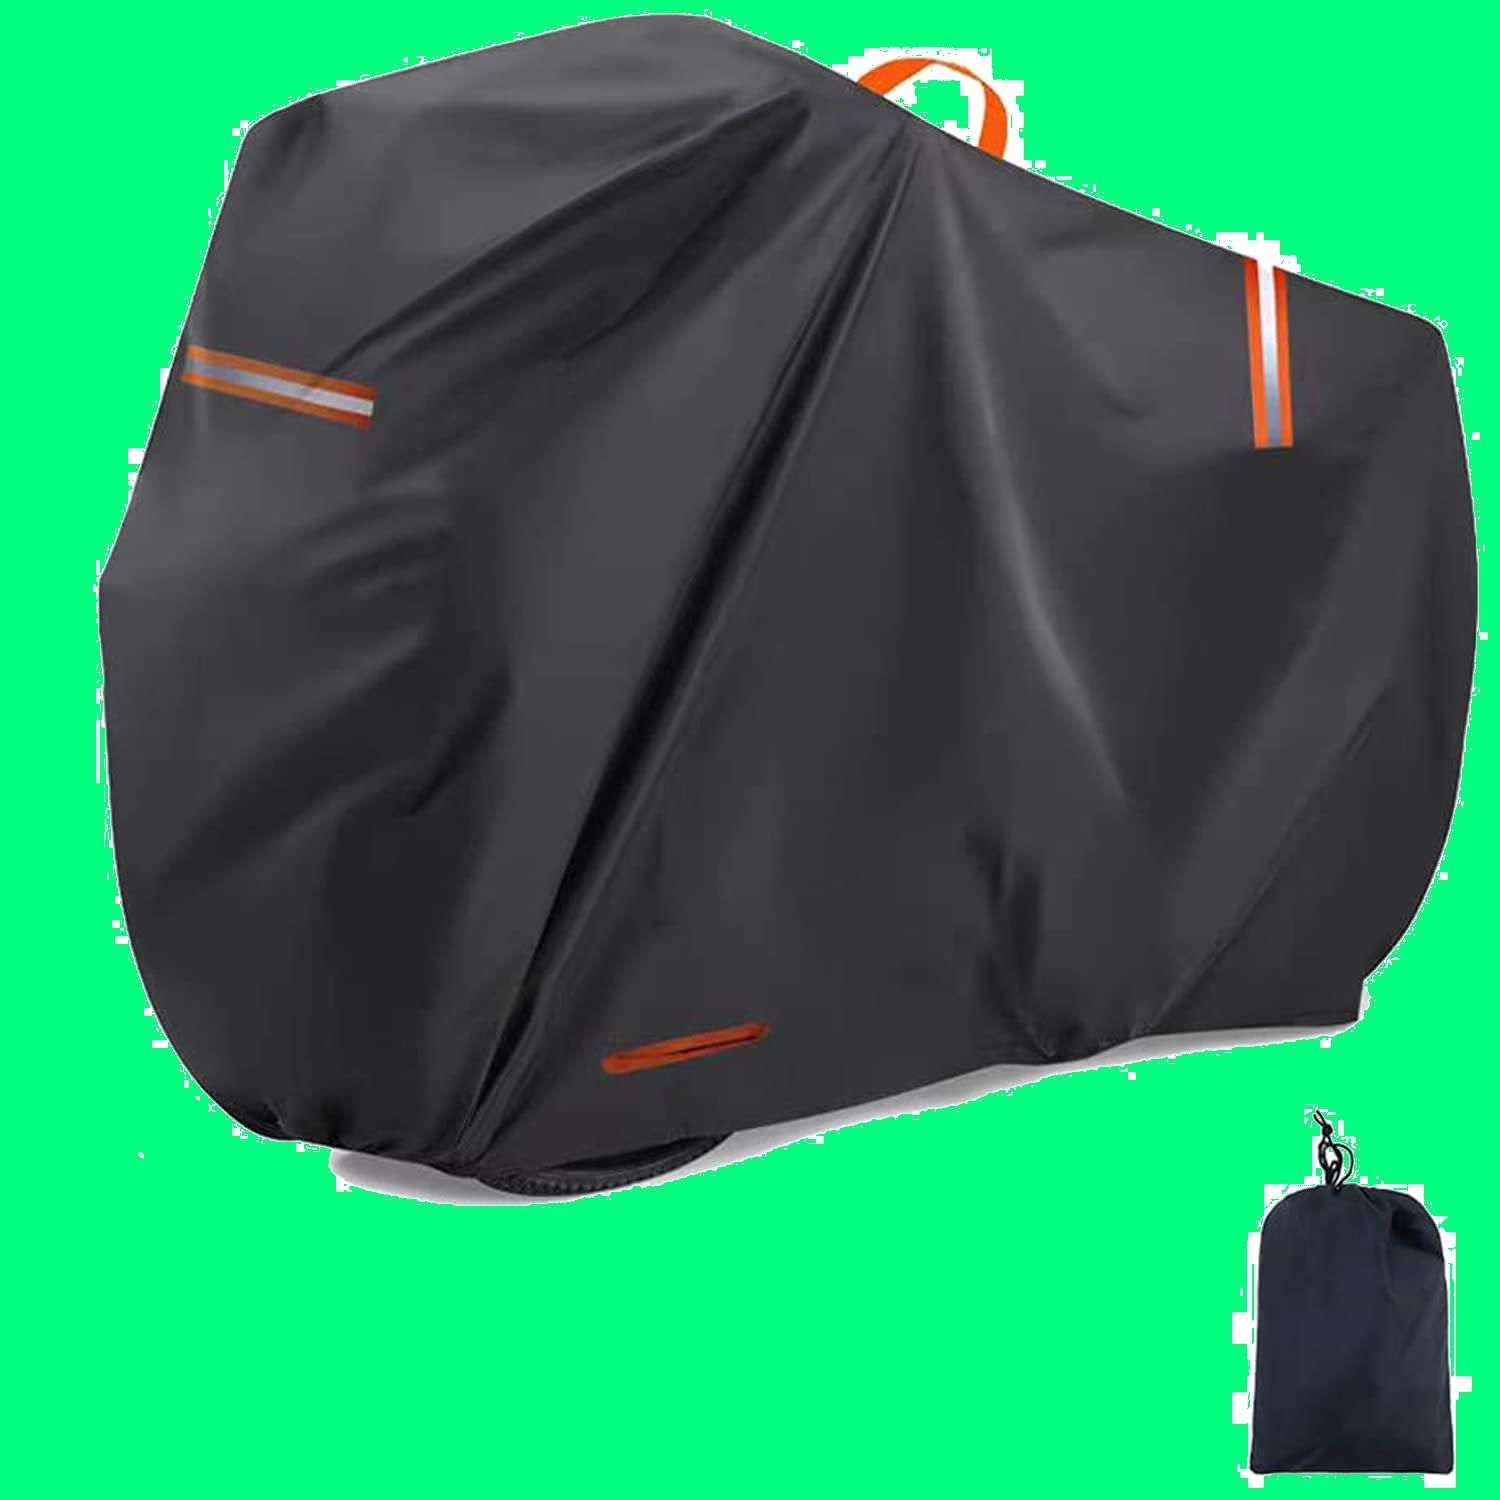 色:黒】防水 厚手 破れにくい 420D 自転車カバー 撥水加工 UVカット グリーンランド メルカリ